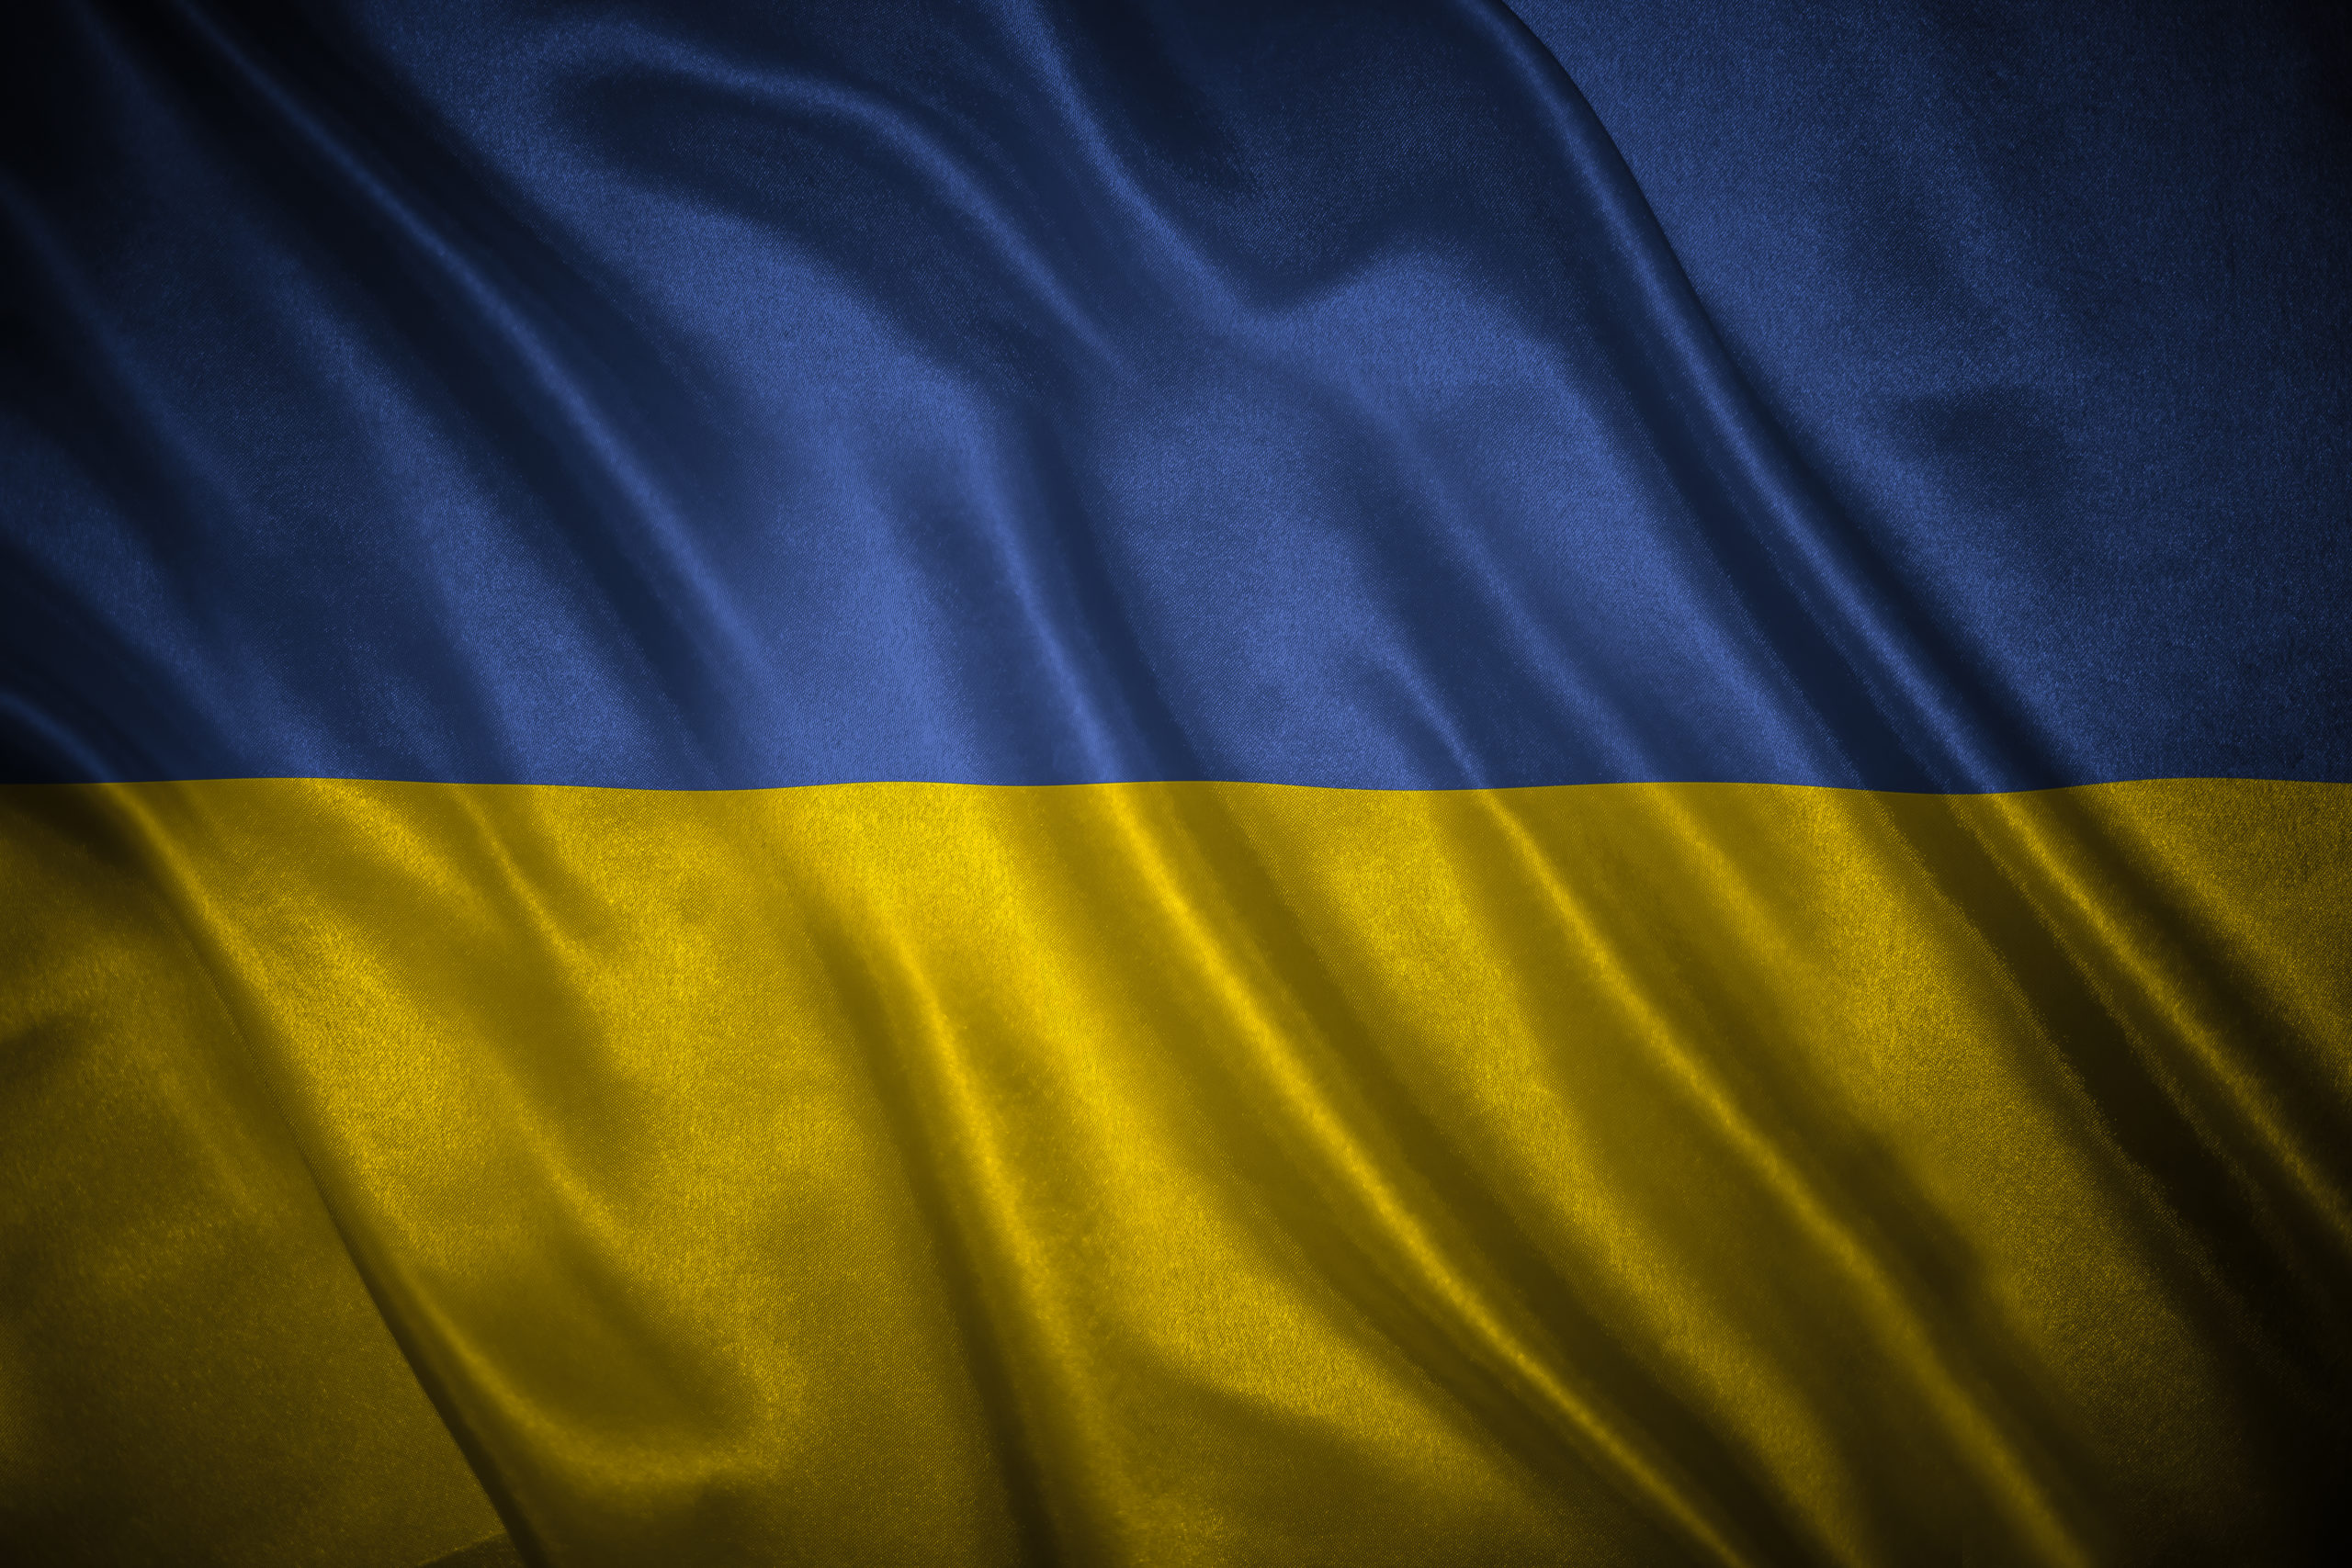 Die ukrainische Flagge.